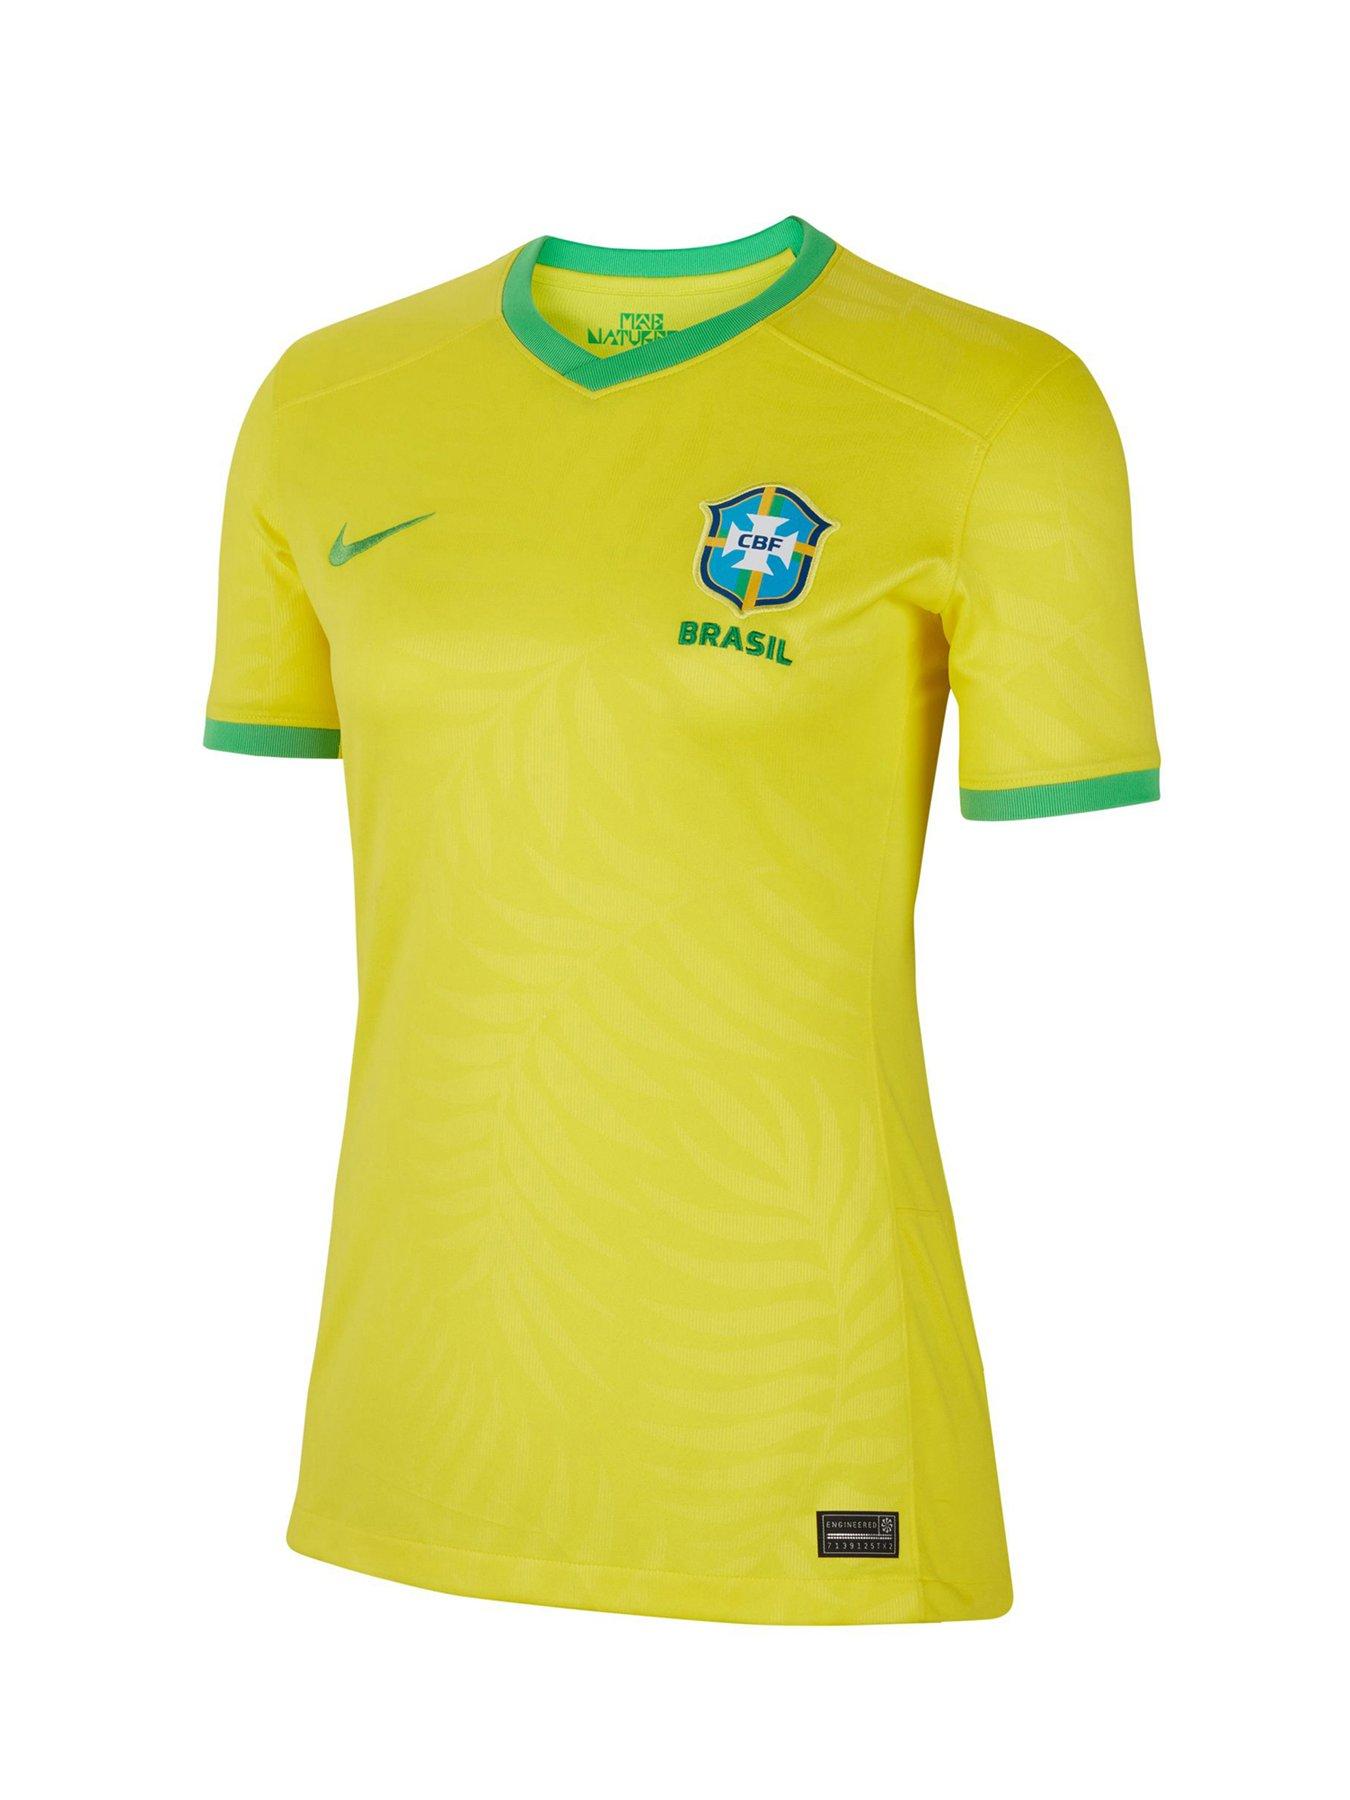 File:Nike Brazil CBF N98 Men's Soccer Track Jacket front.JPG